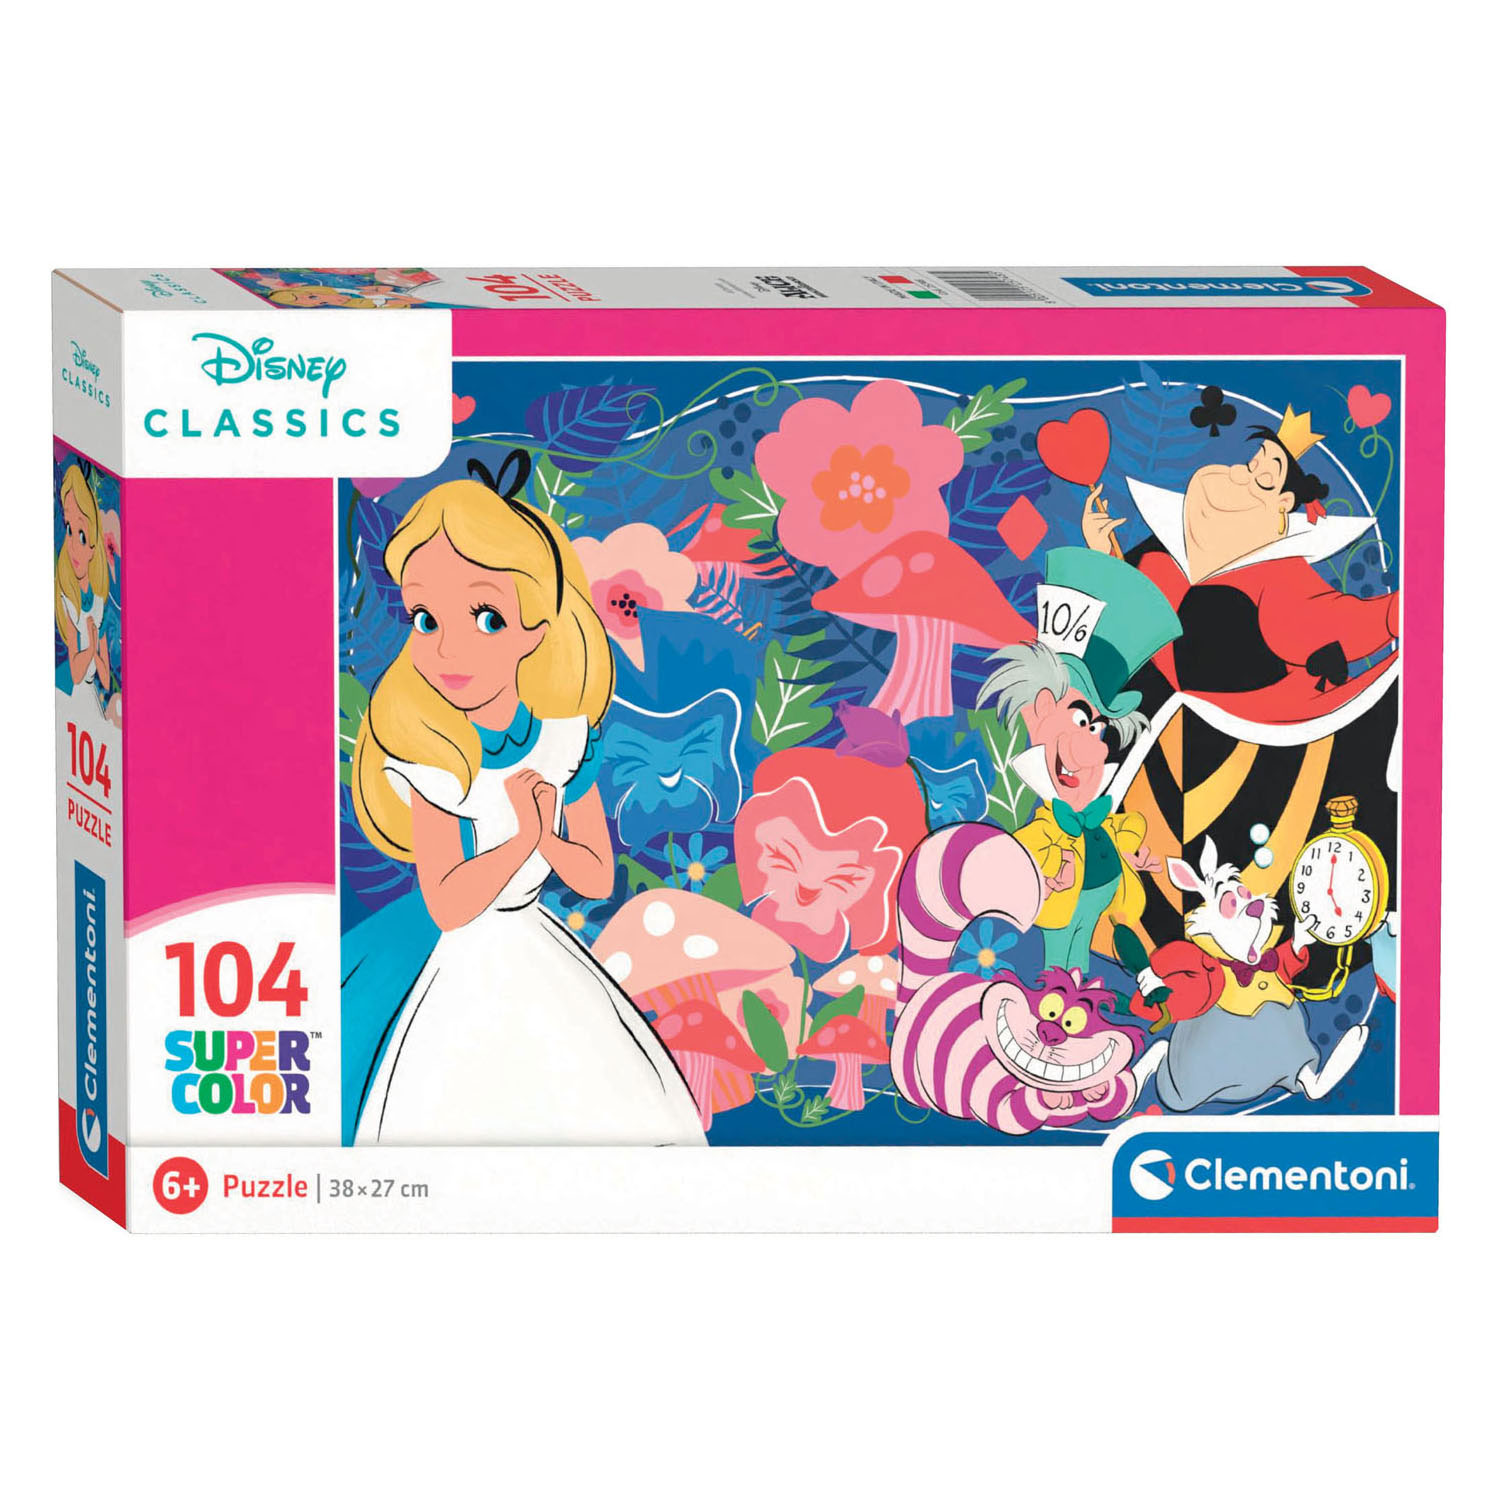 Clementoni - Puzzle Disney Classics Alice - 104 stukjes - 25748